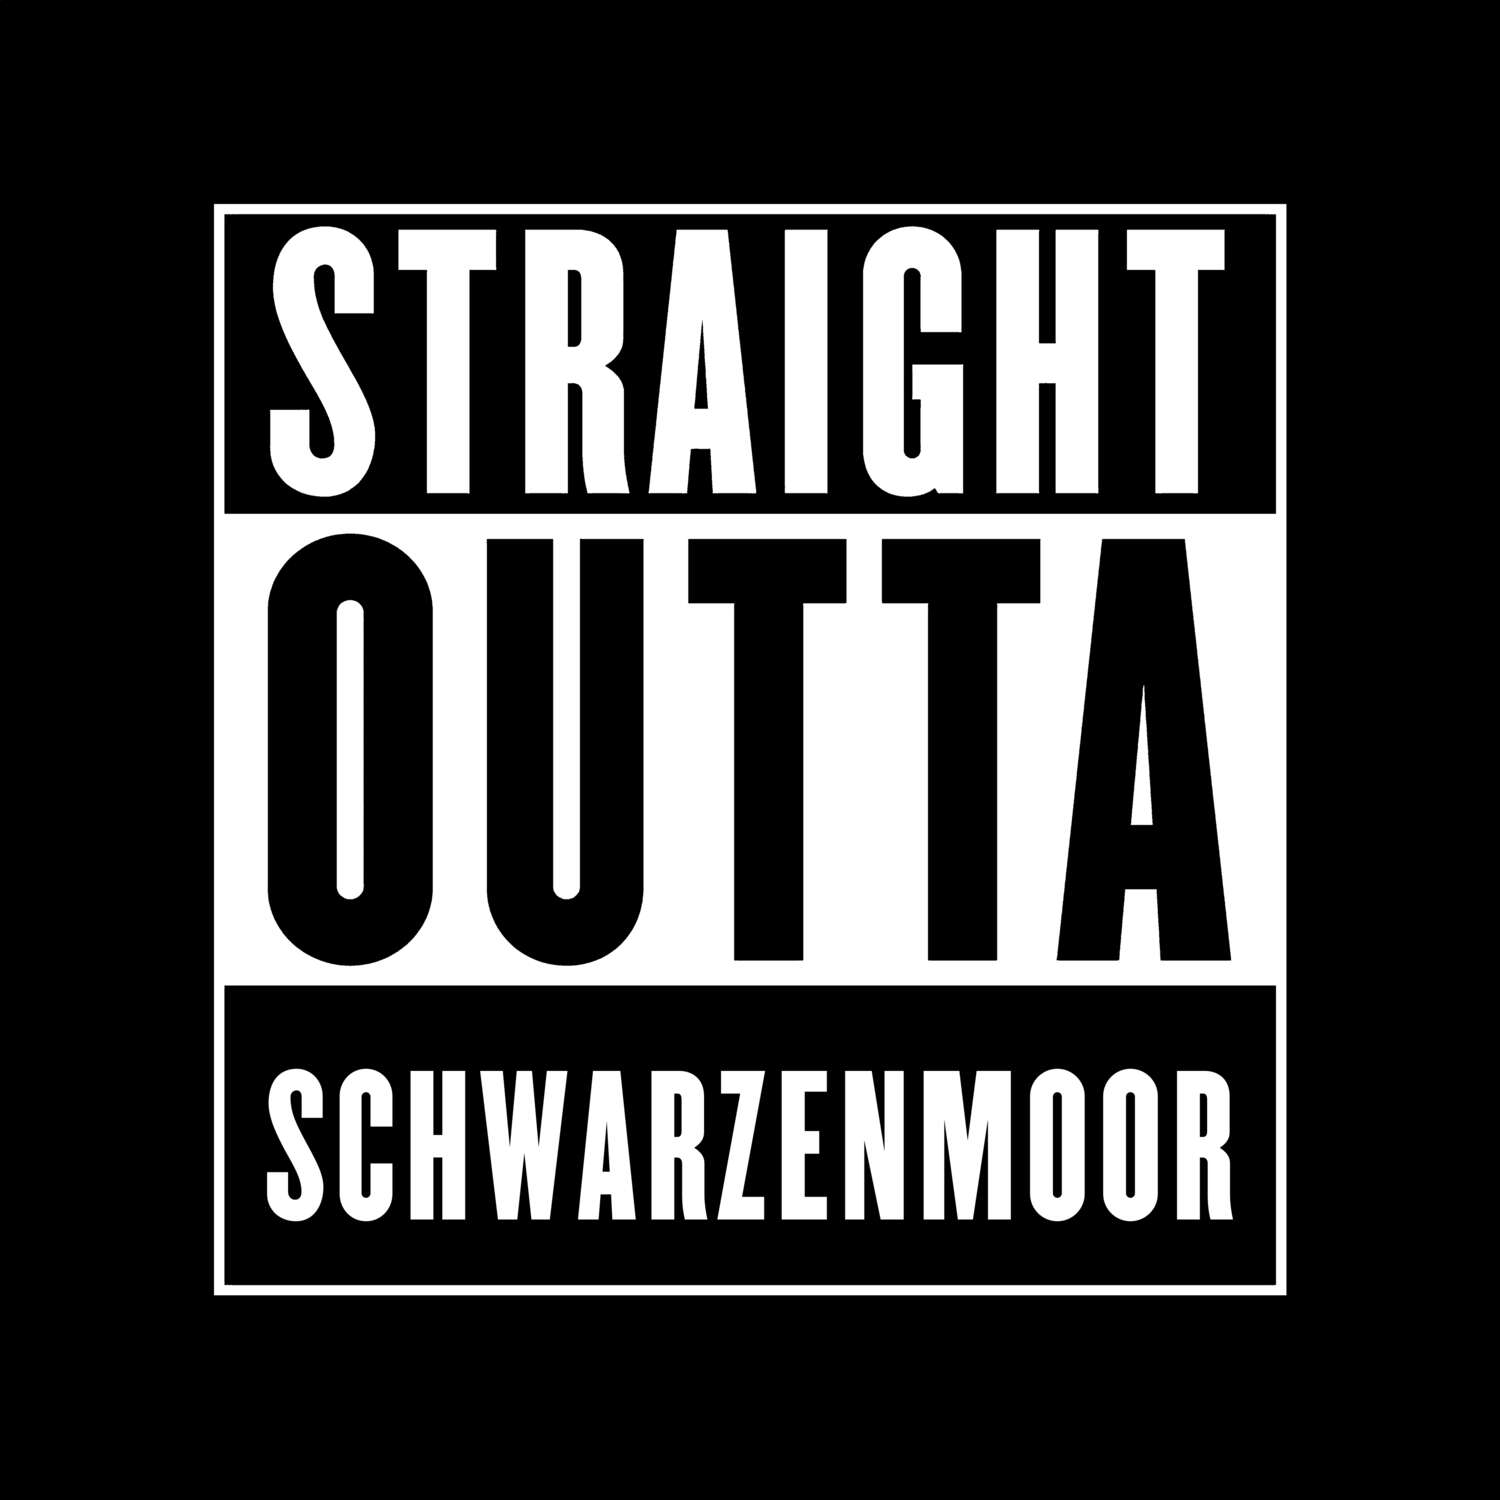 Schwarzenmoor T-Shirt »Straight Outta«